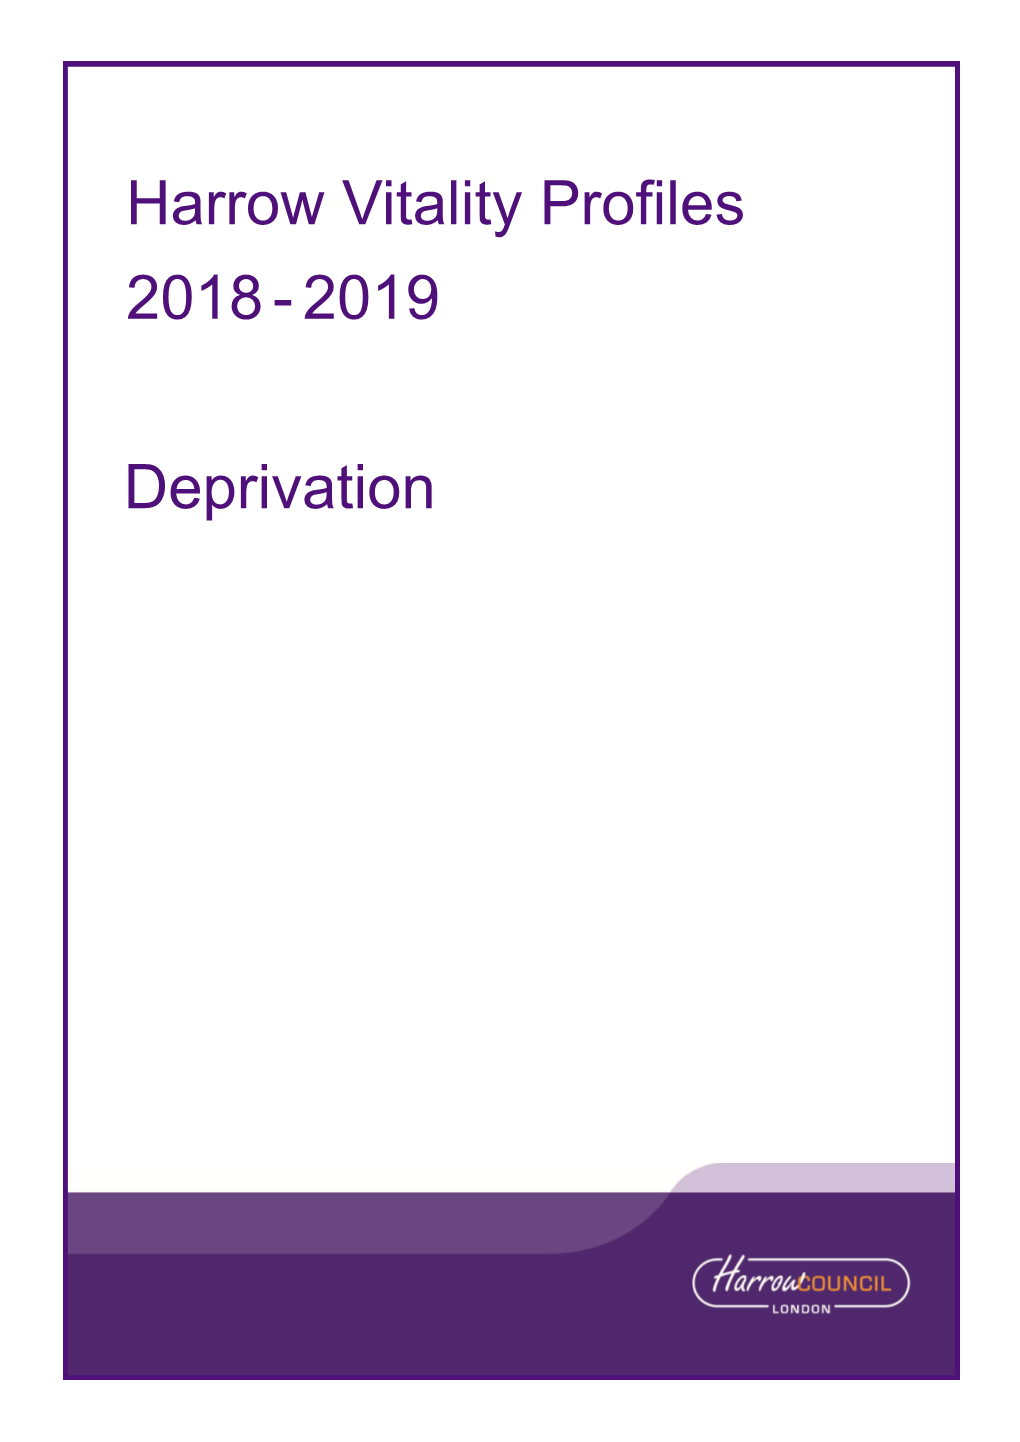 Harrow Vitality Profiles 2018-2019 Deprivation